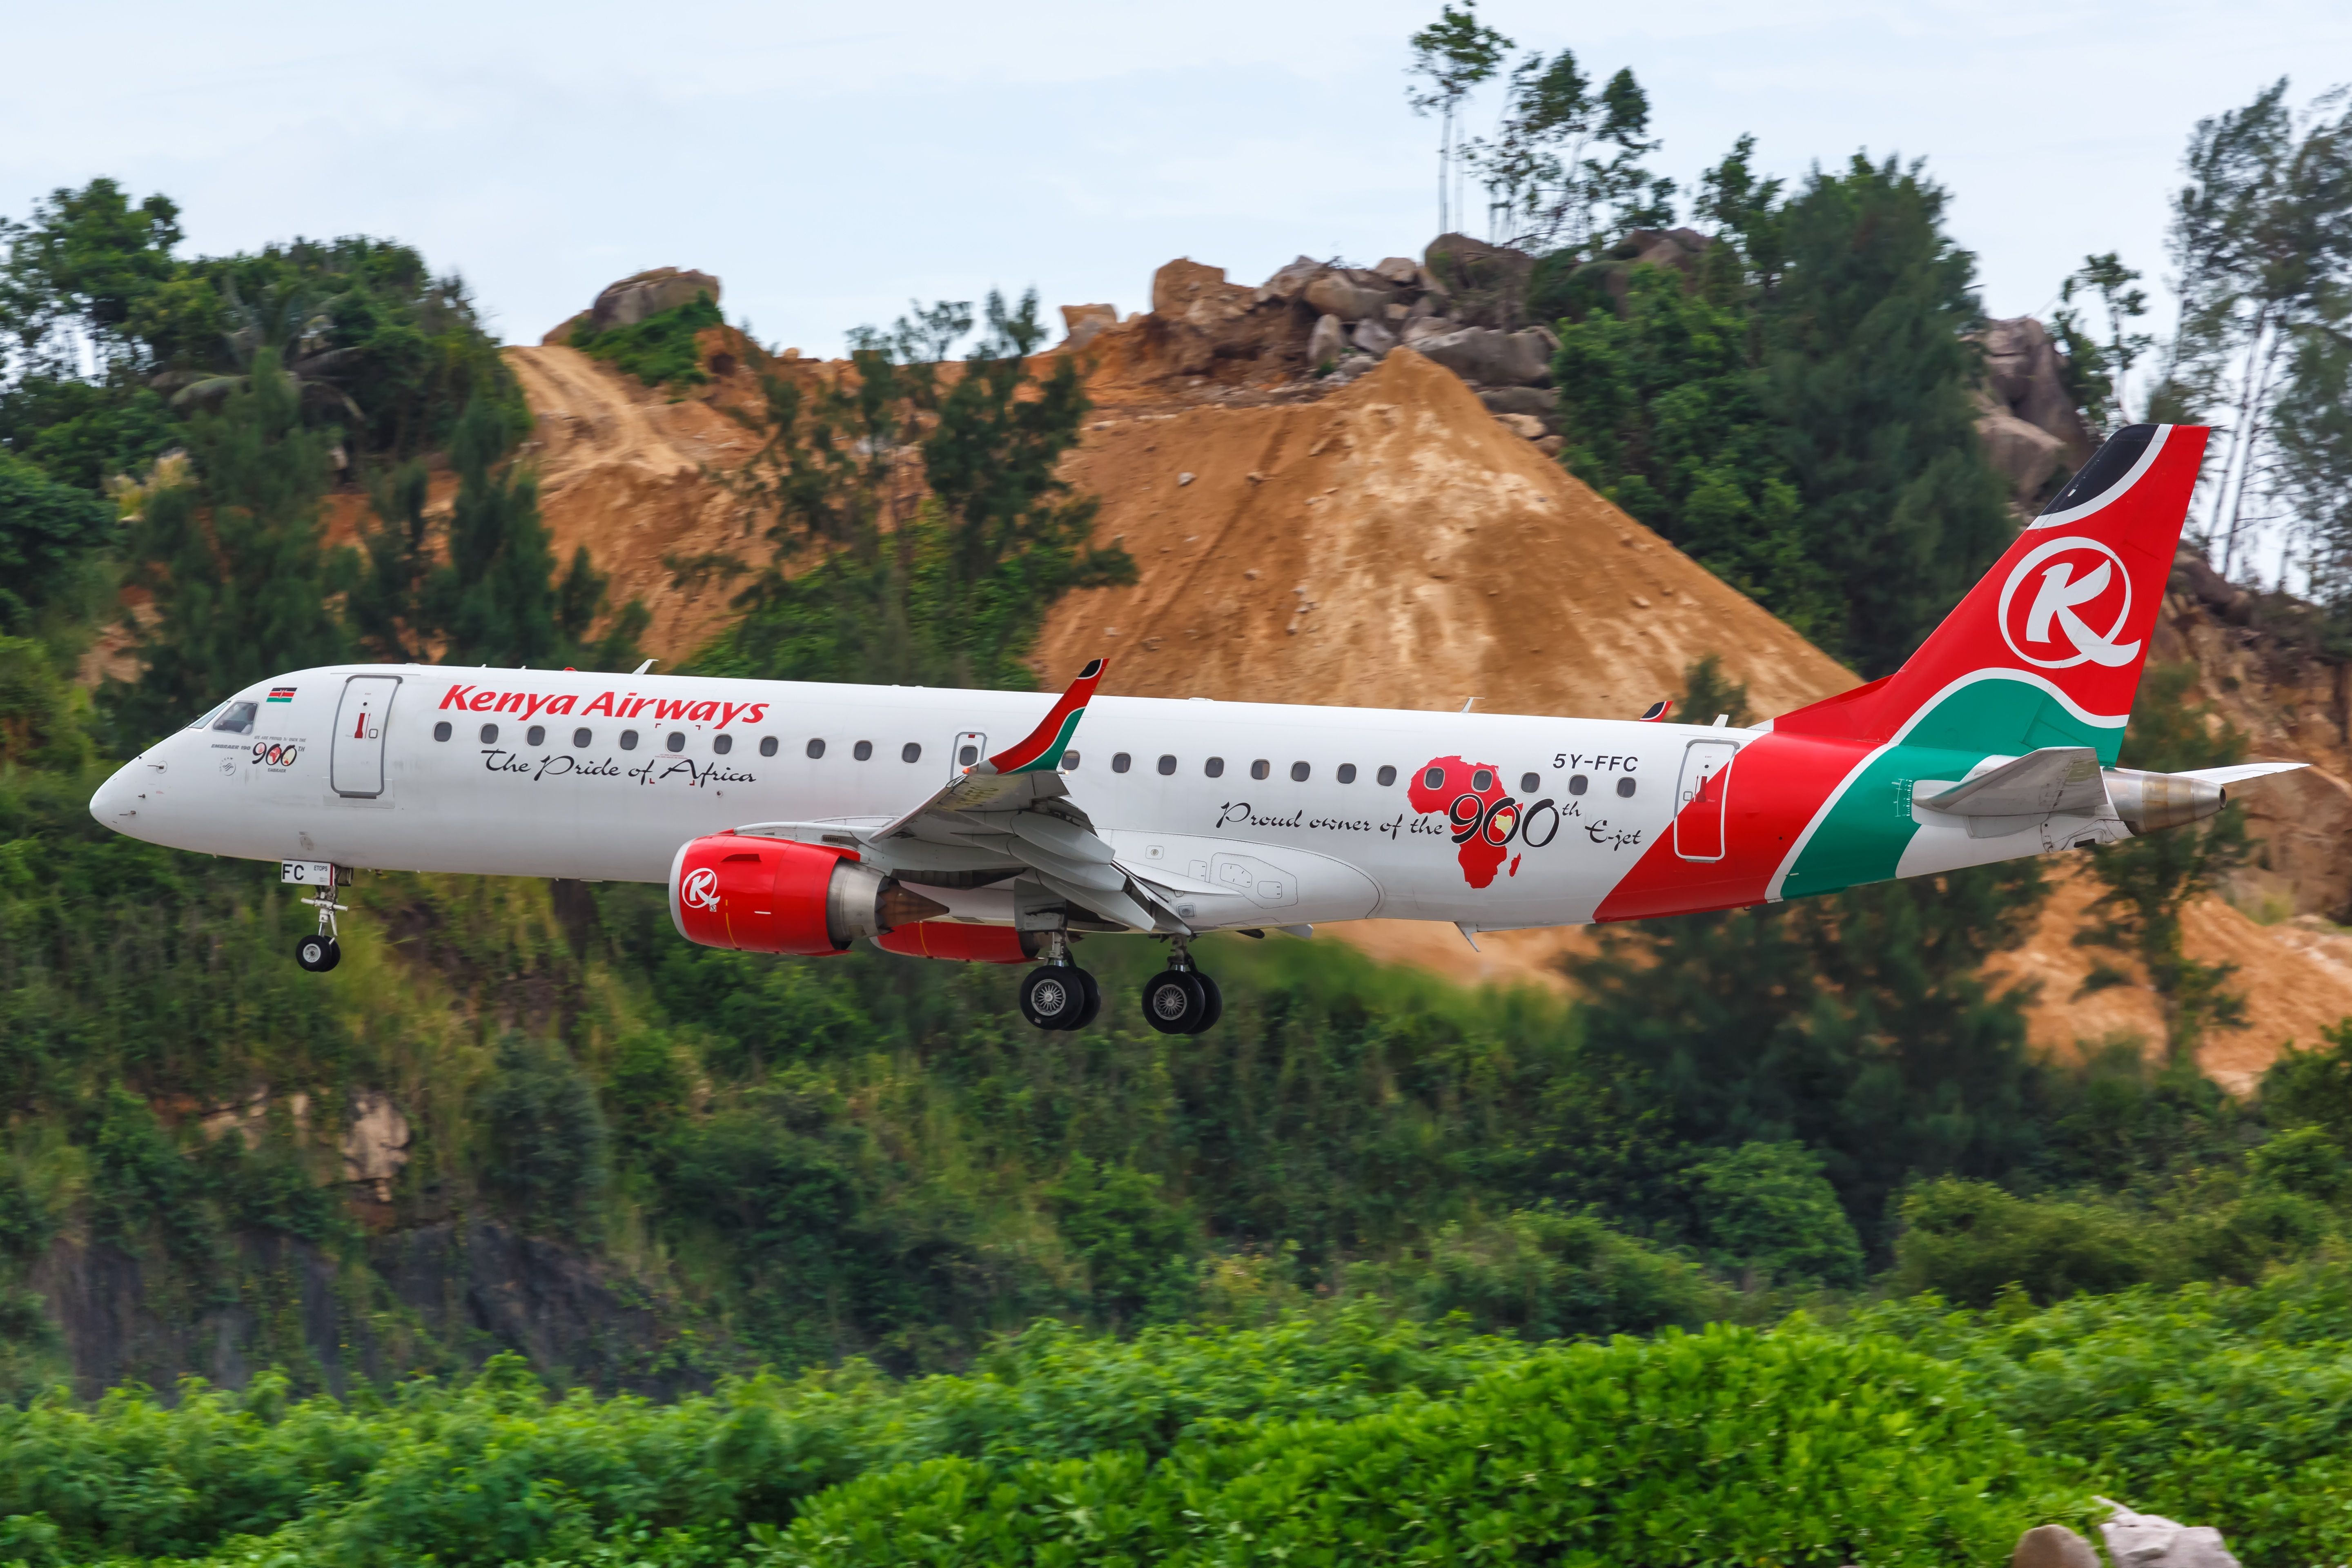 Kenya Airways E190 landing